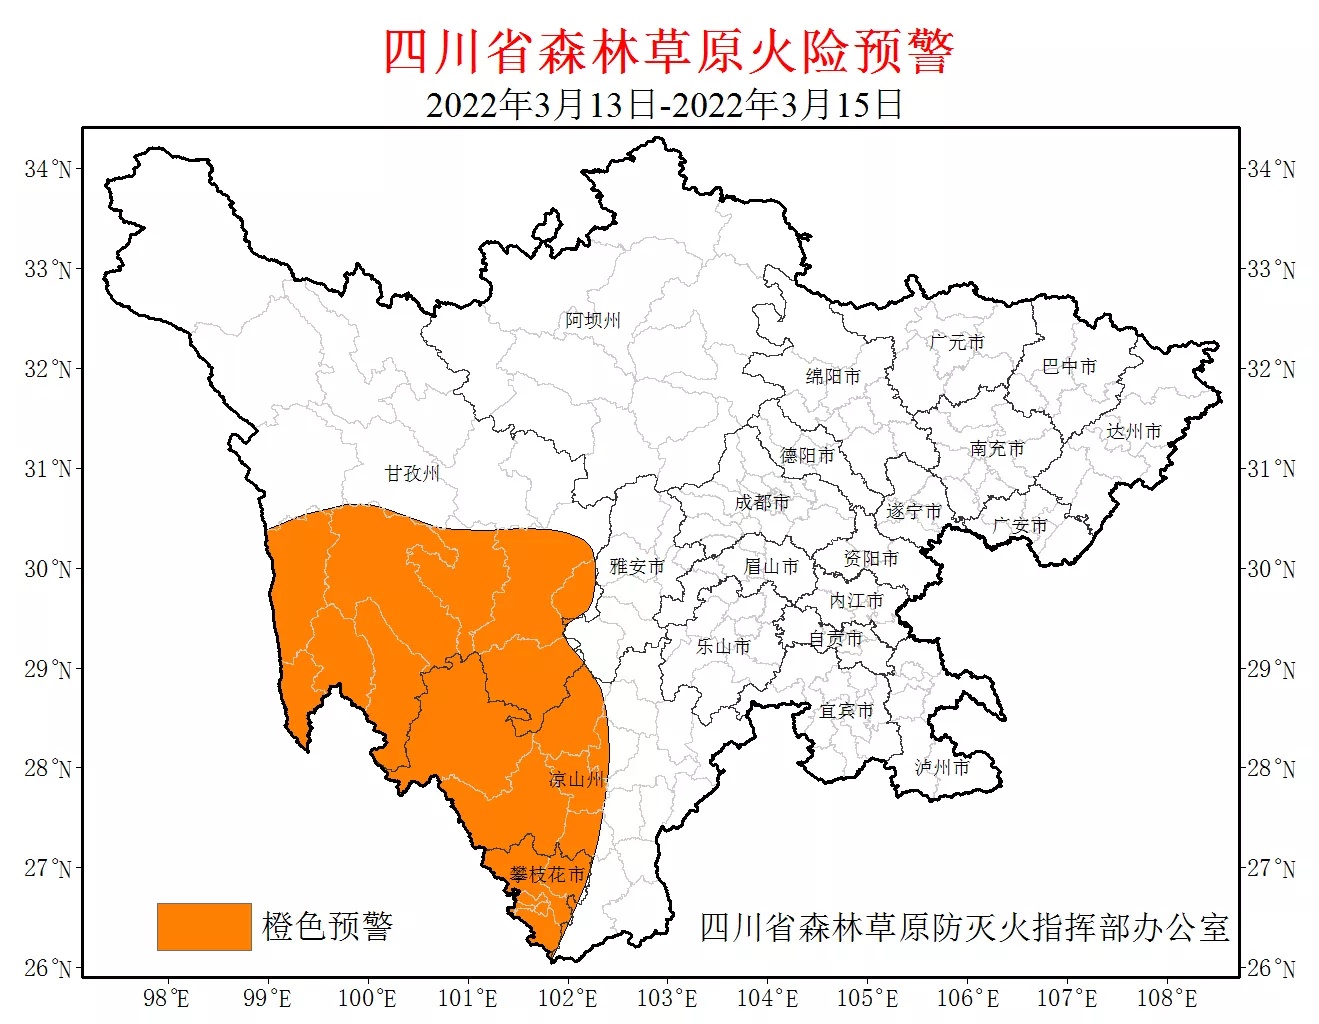 四川森林草原火险橙色预警延长至3月15日，川西这20个县（市、区）需注意防范